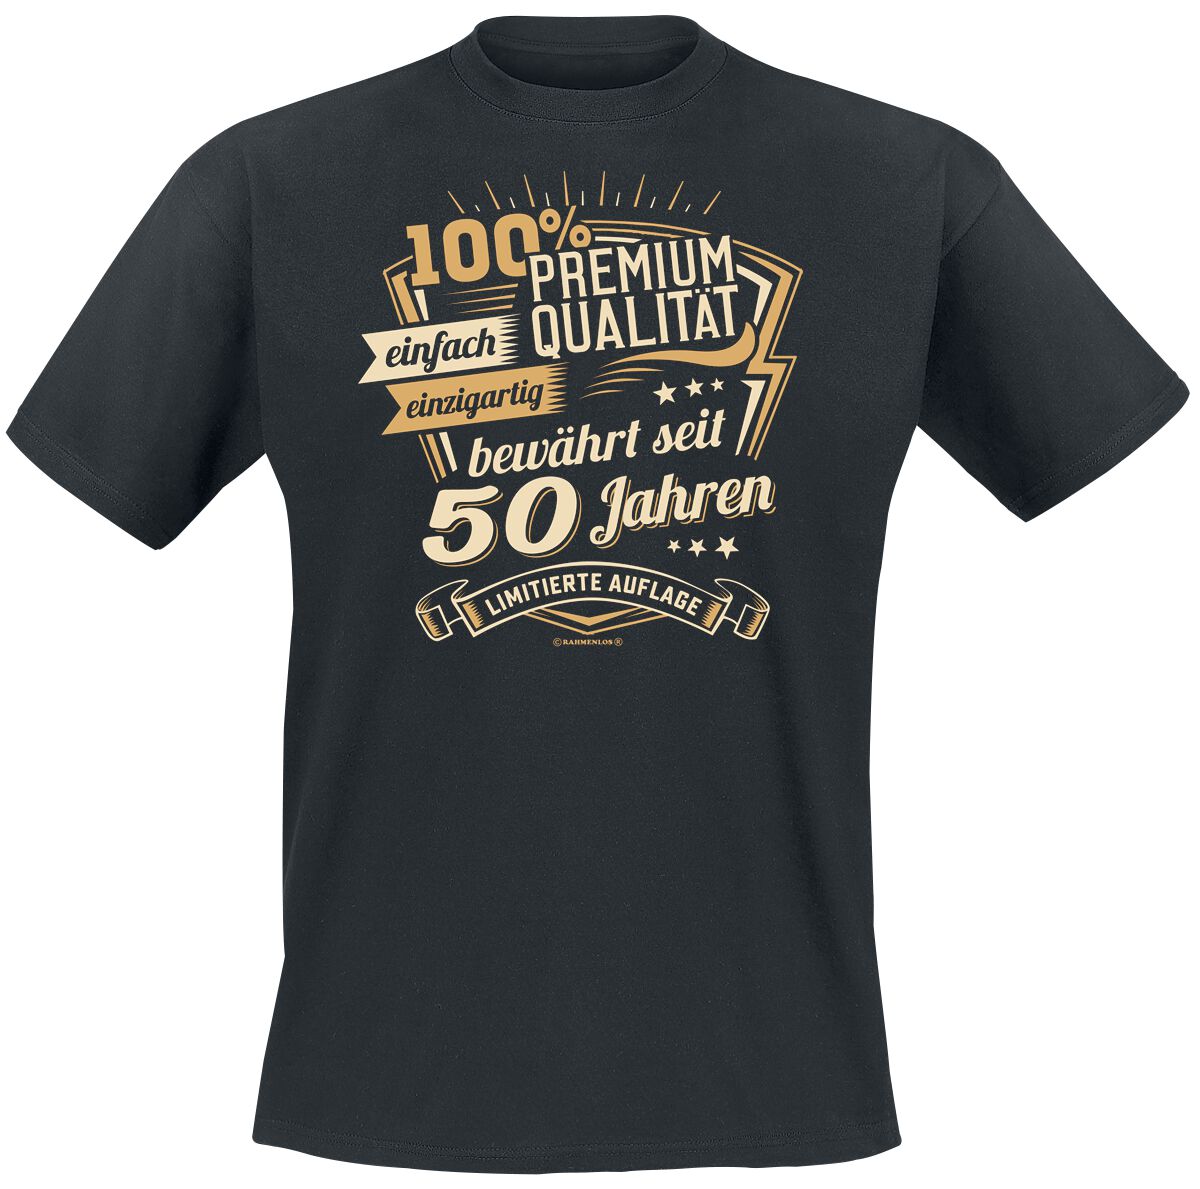 Sprüche Premium seit 50 Jahren T-Shirt schwarz in M